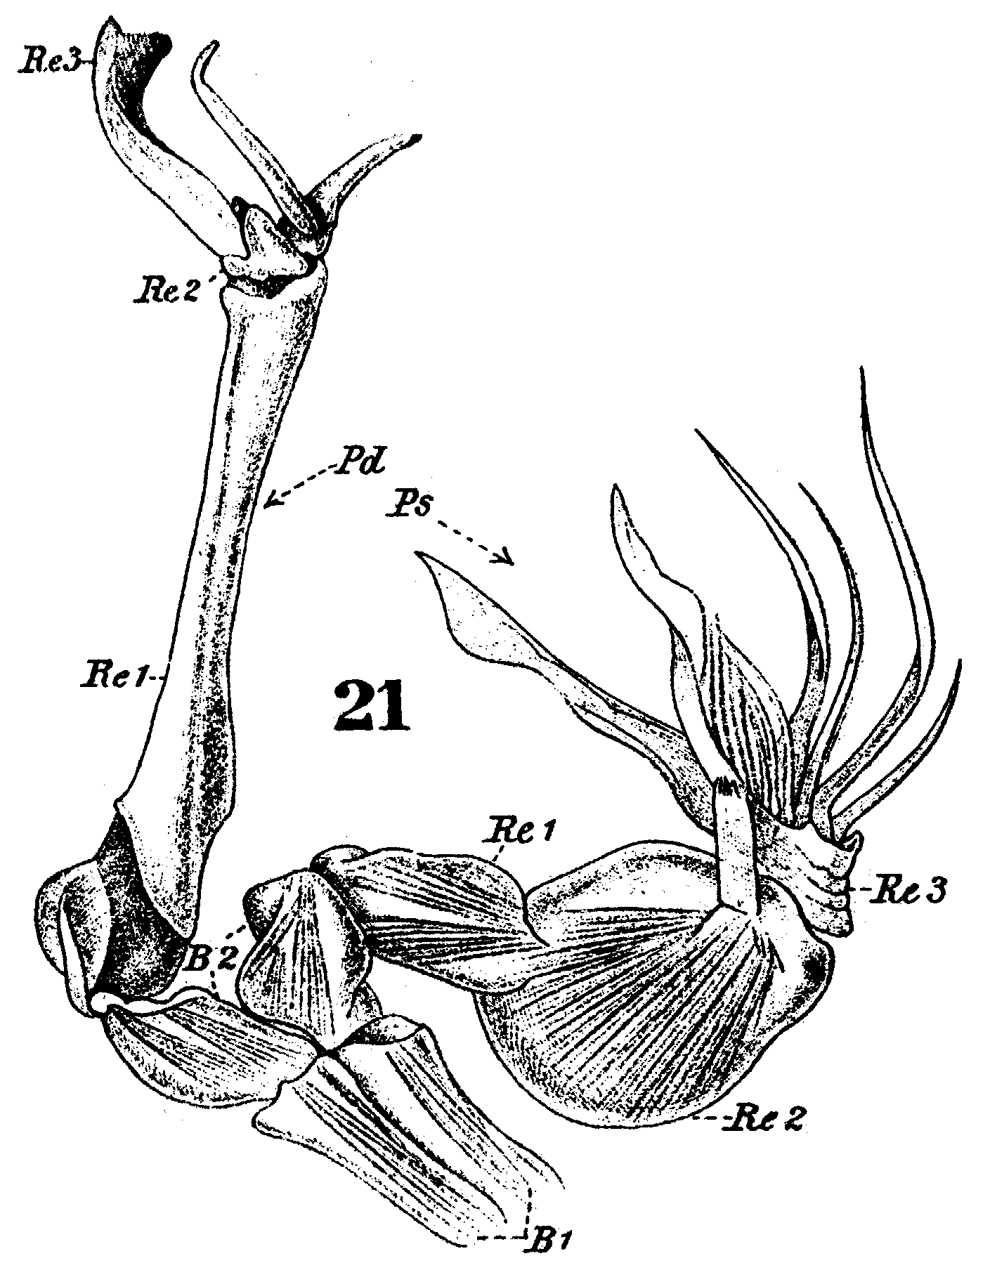 Species Stephos gyrans - Plate 3 of morphological figures